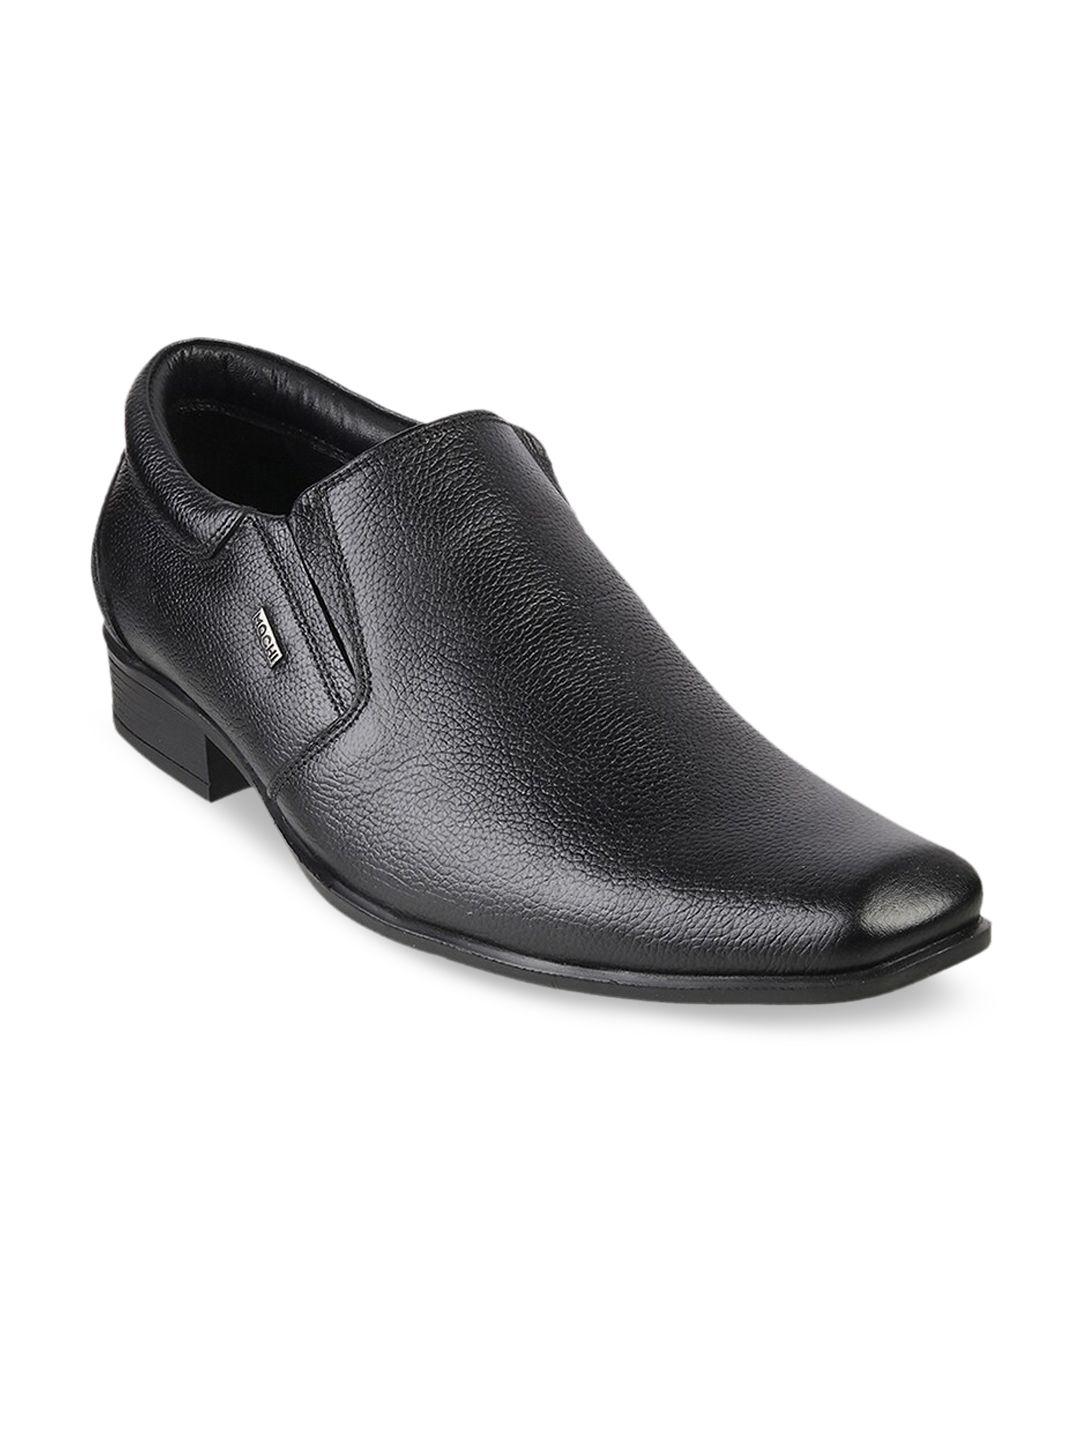 mochi men black solid leather formal slip-ons